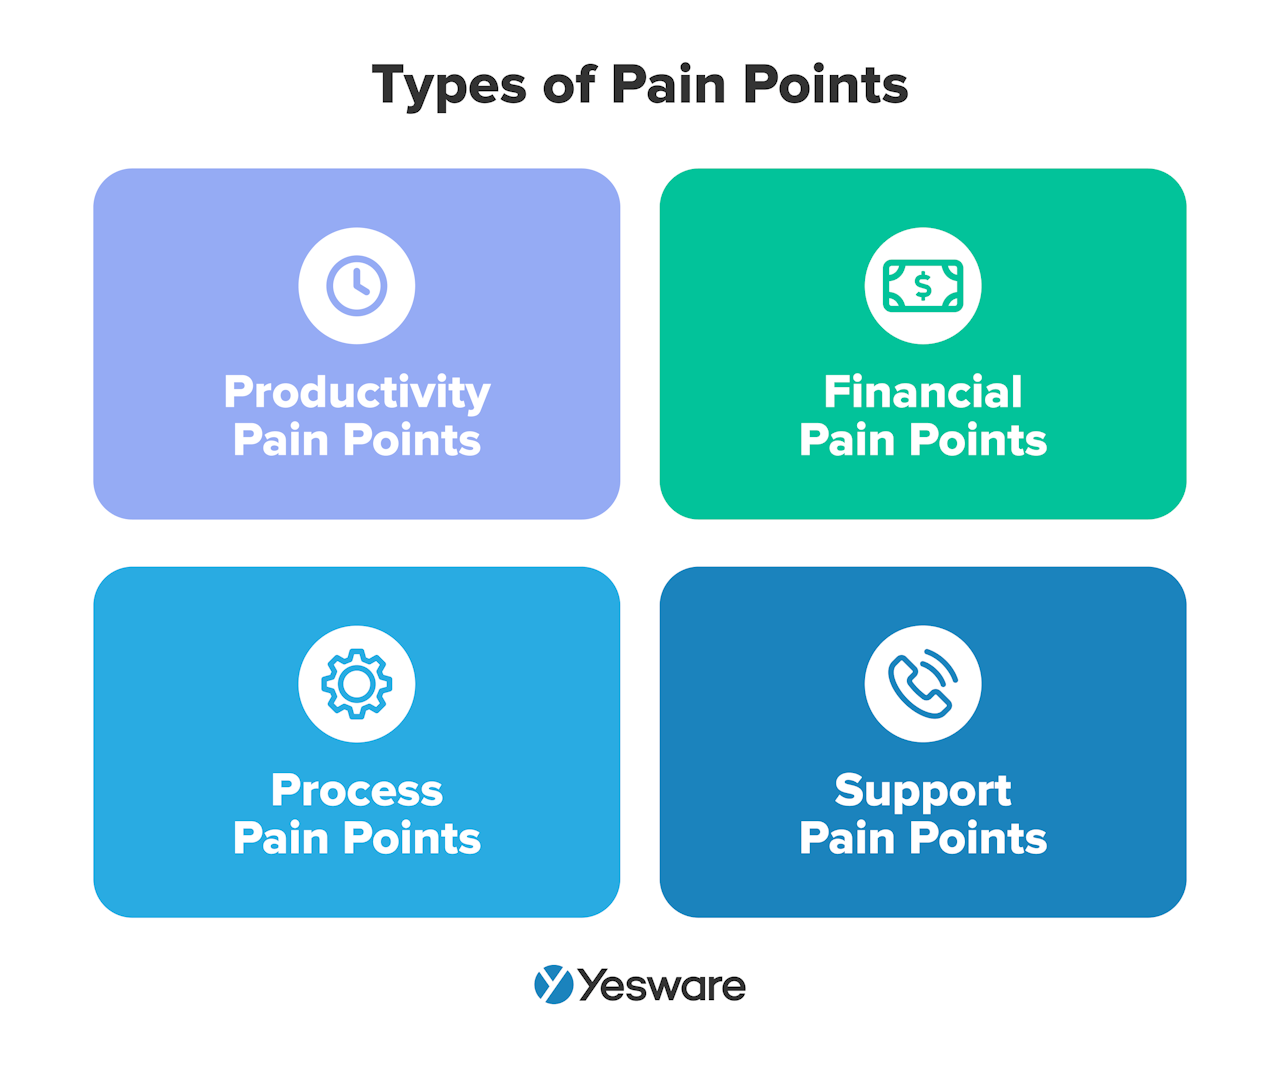 consultative sales: pain points